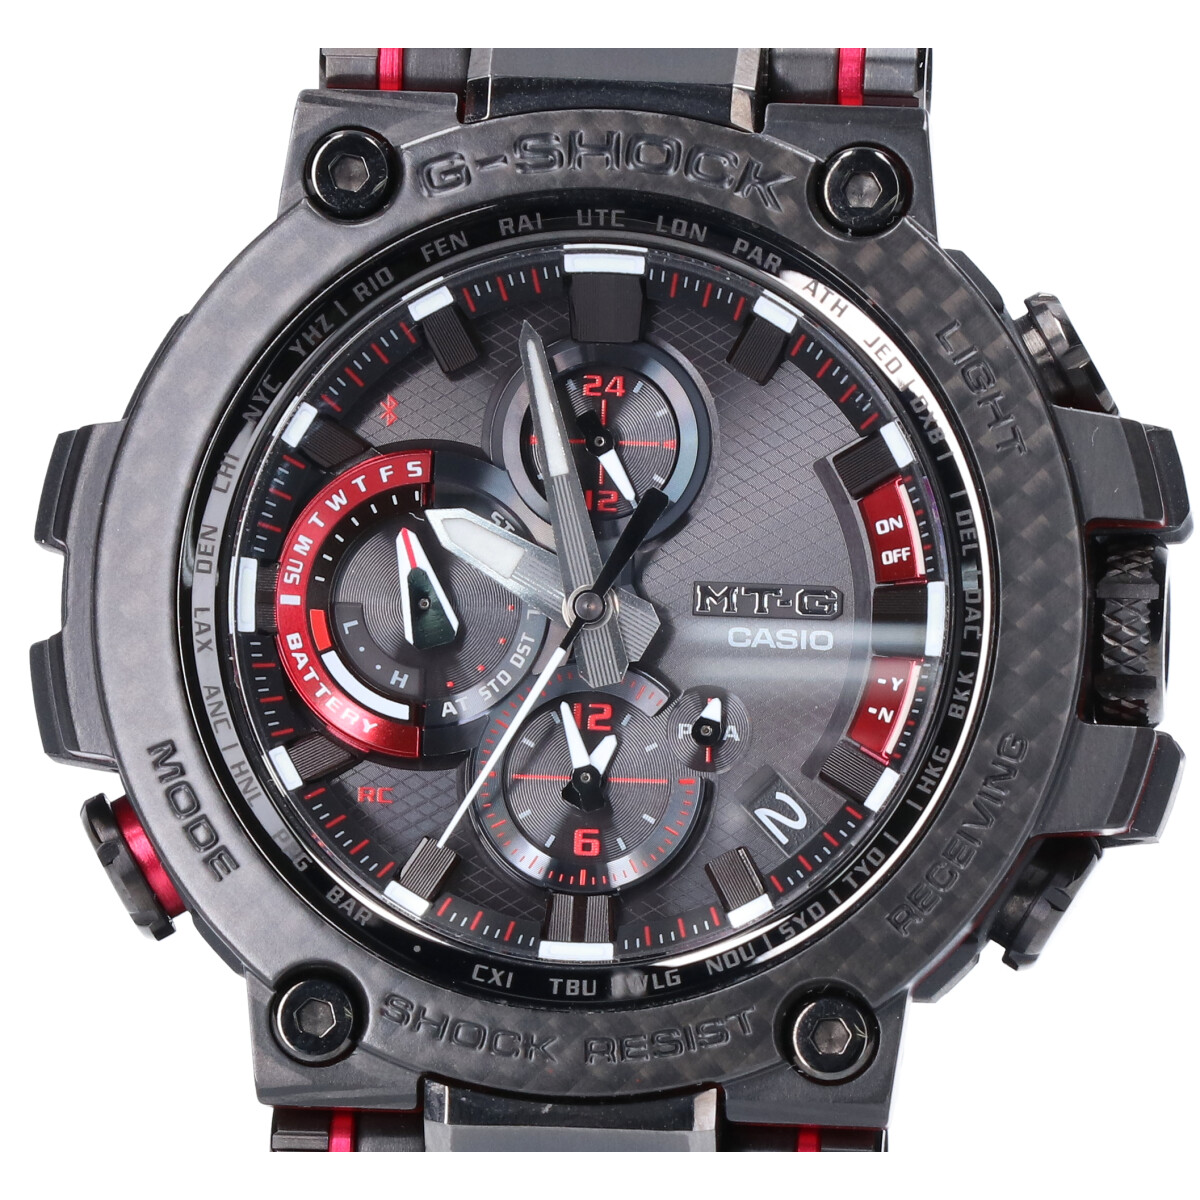 ジーショックのMTG-B1000XBD-1AJF MT-G カーボンベゼル ワールドタイム Bluetooth搭載 電波ソーラー腕時計の買取実績です。